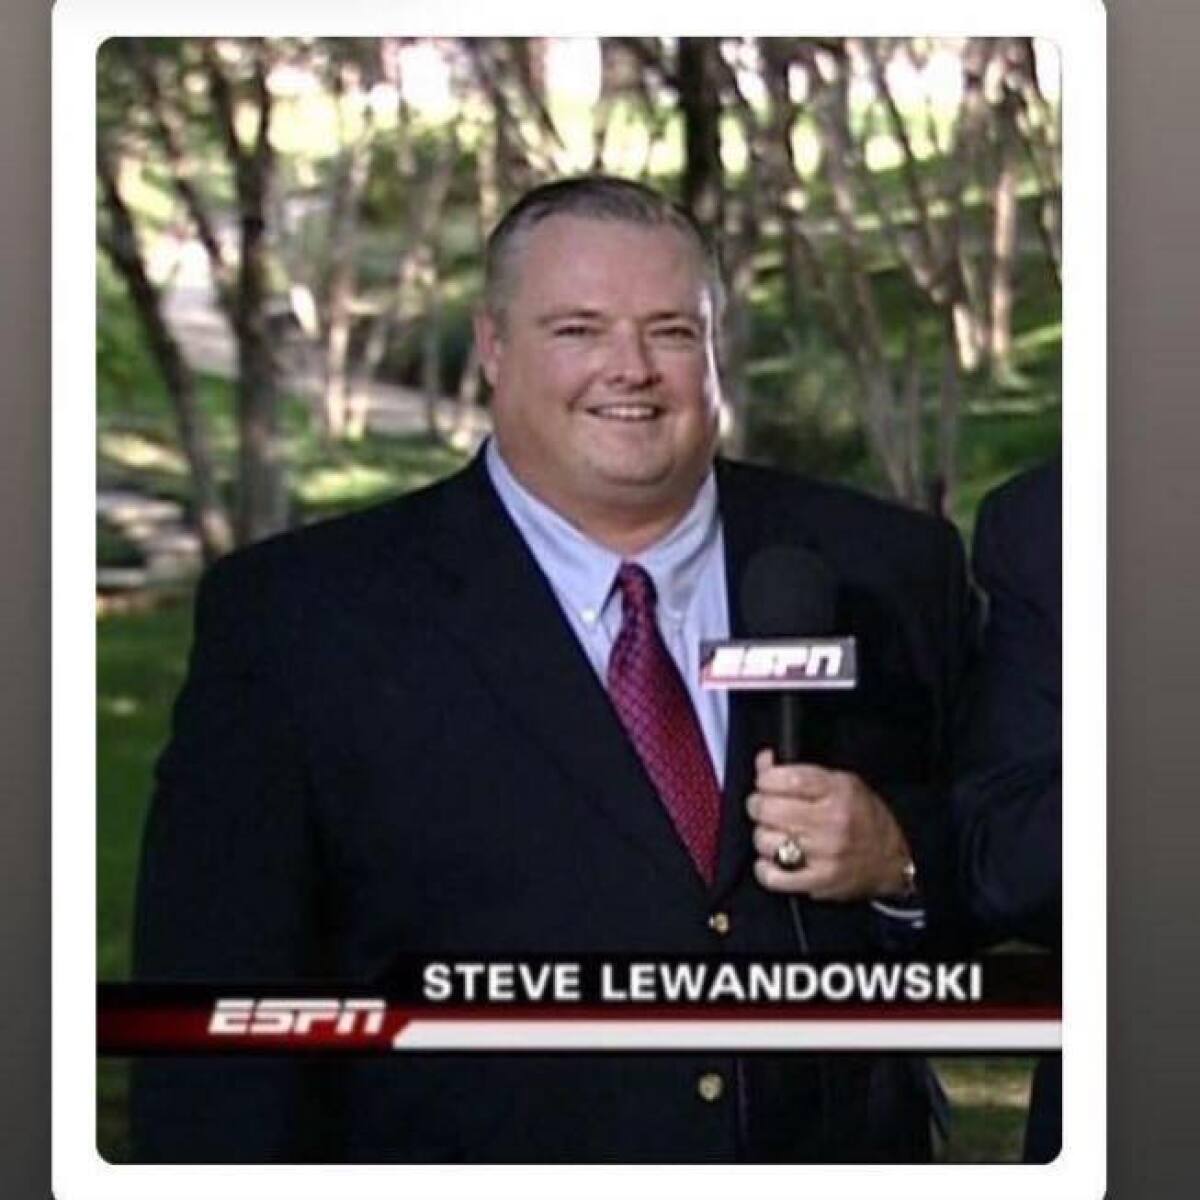 Steve Lewandowski